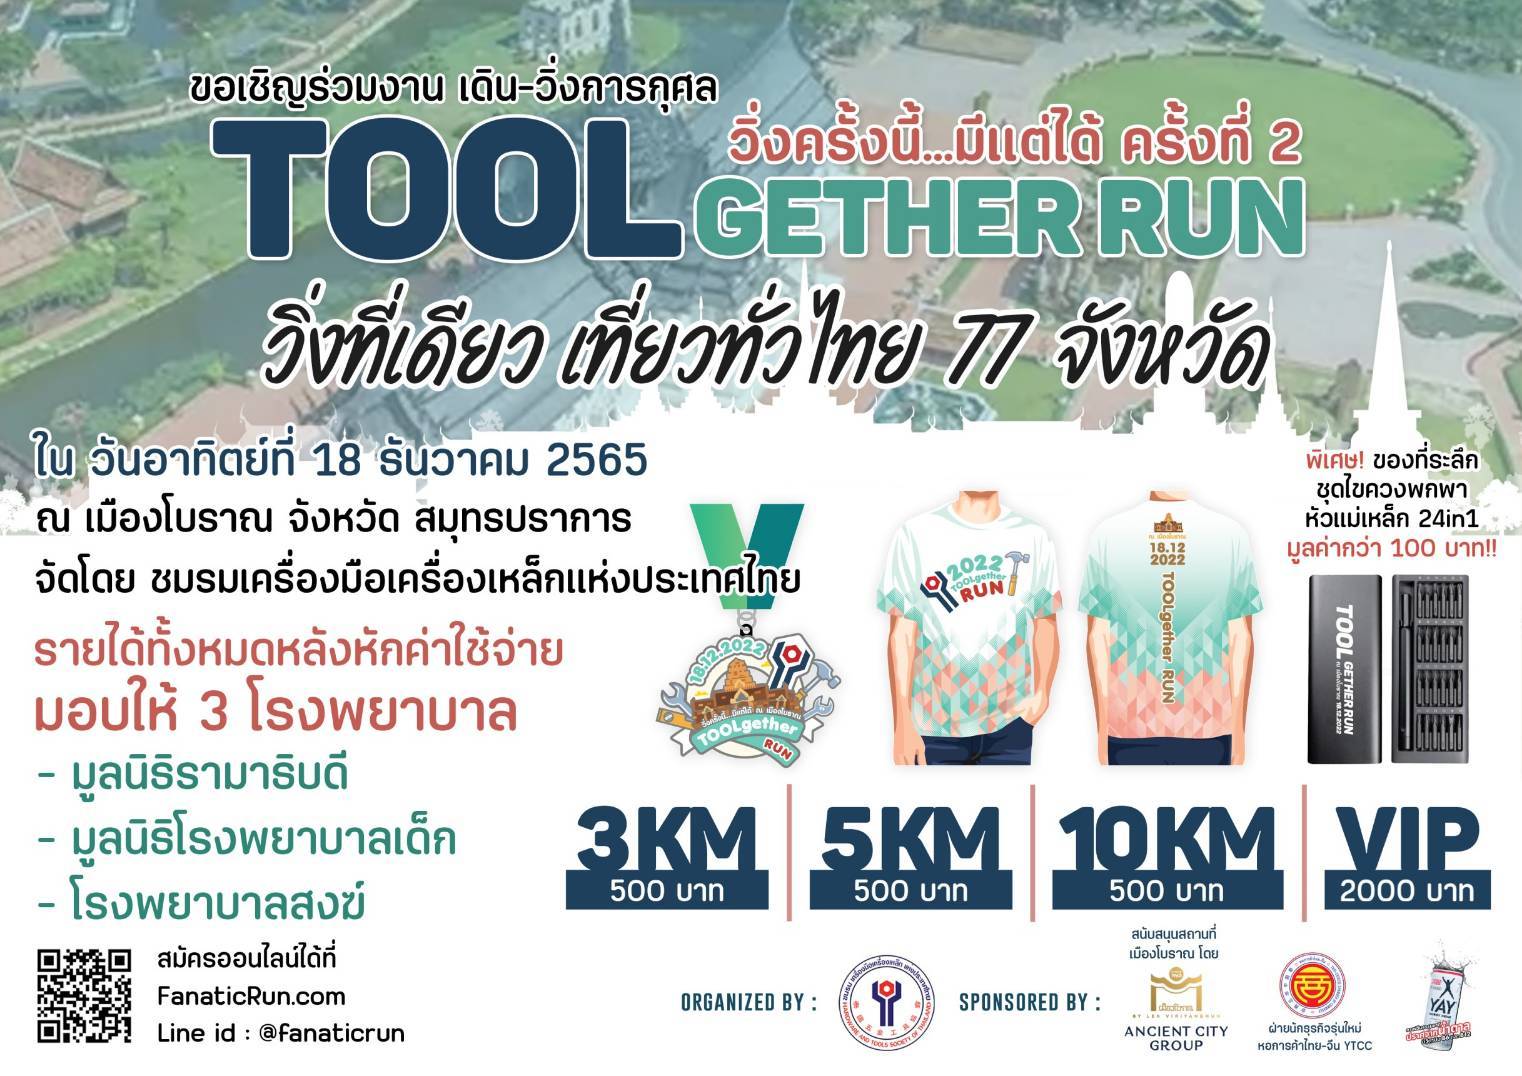 ชมรมเครื่องมือเครื่องเหล็กแห่งประเทศไทย จัดกิจกรรม งานเดิน – วิ่ง การกุศล TOOL GETHER RUN วิ่งที่เดียว เที่ยวทั่วไทย 77 จังหวัด